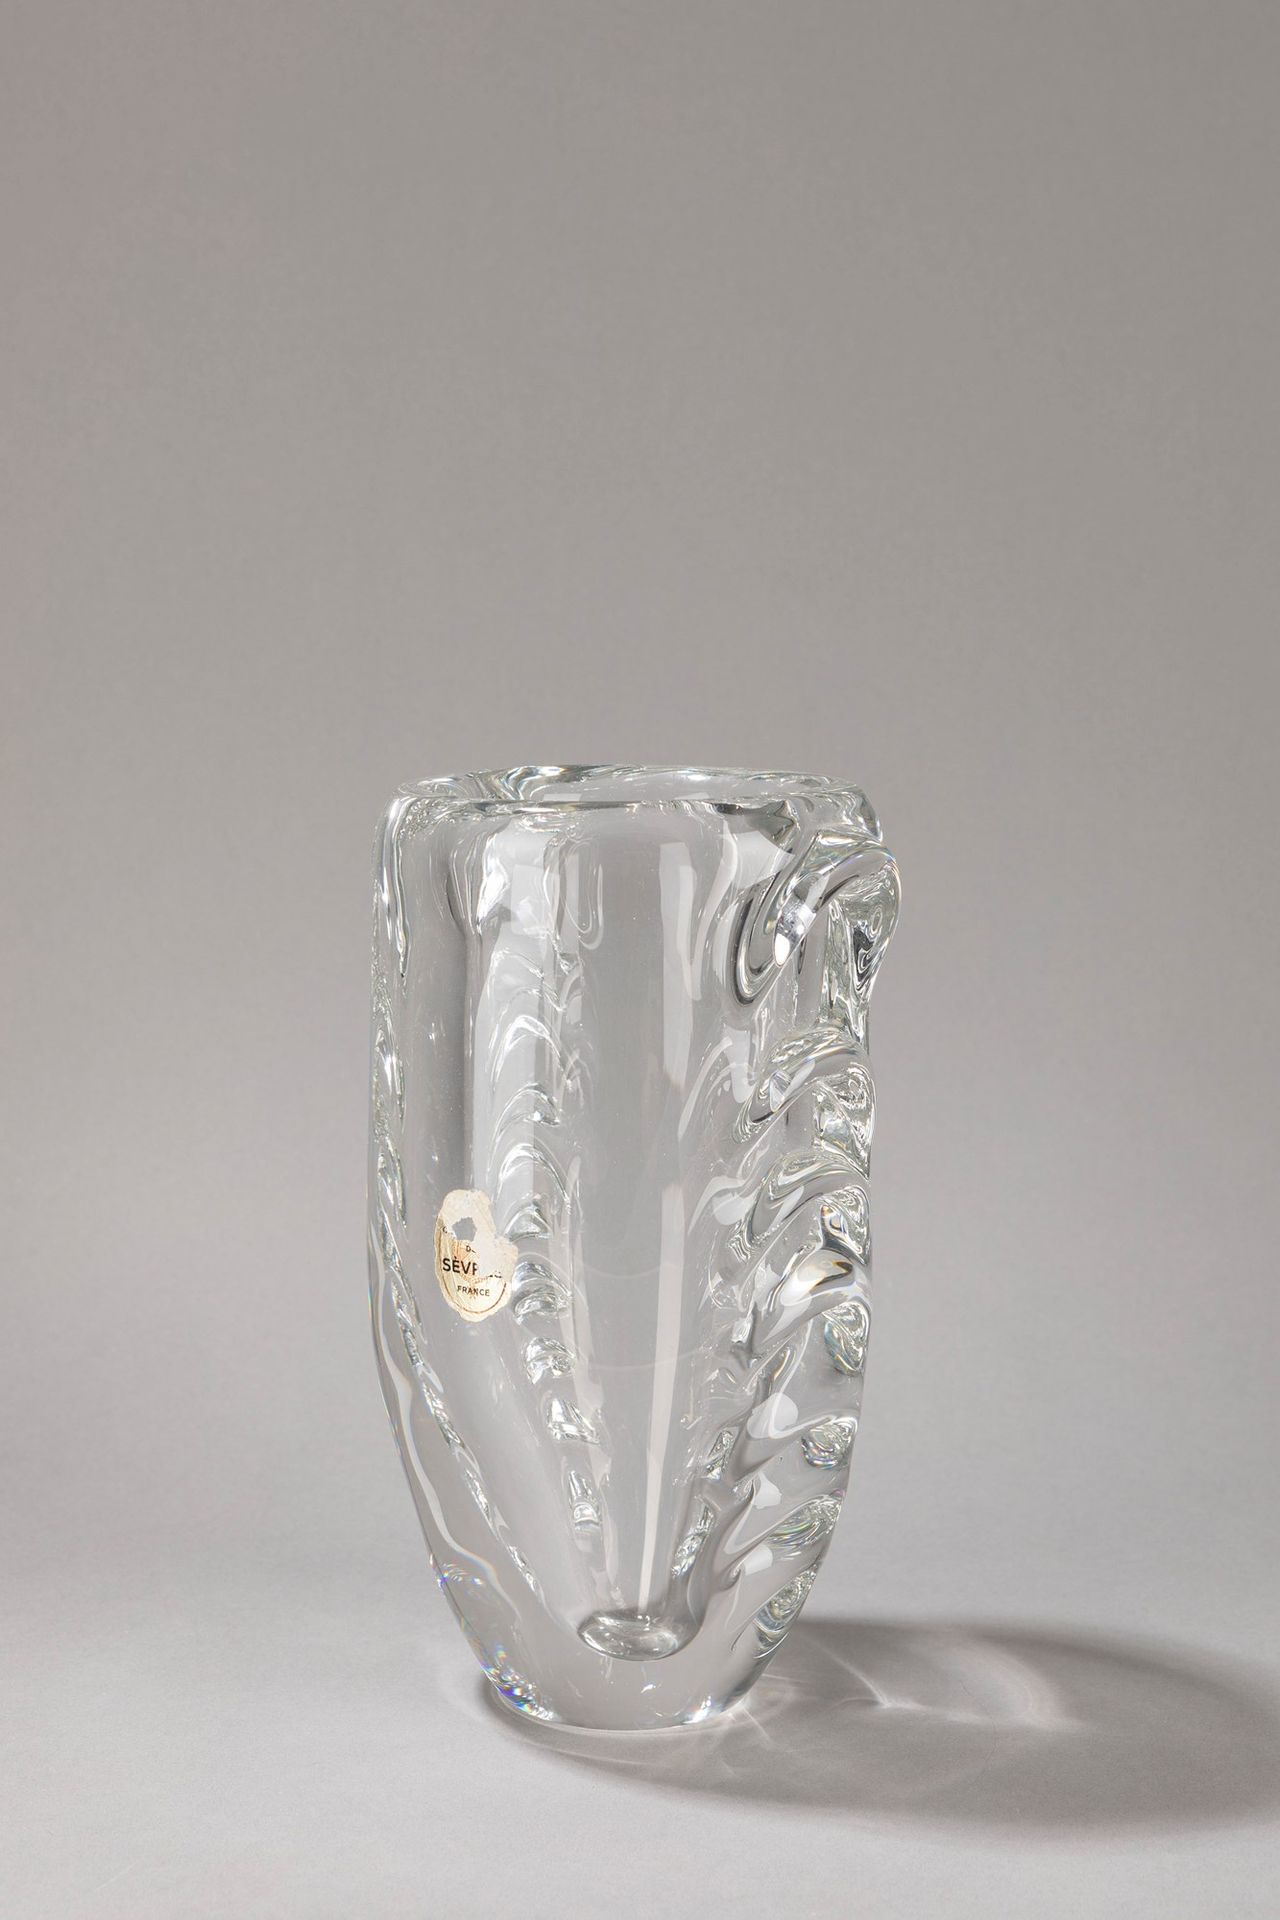 SÈVRES Vase, 1960 ca.

H 25,5 x 14 cm
blown glass.

Signed under the base